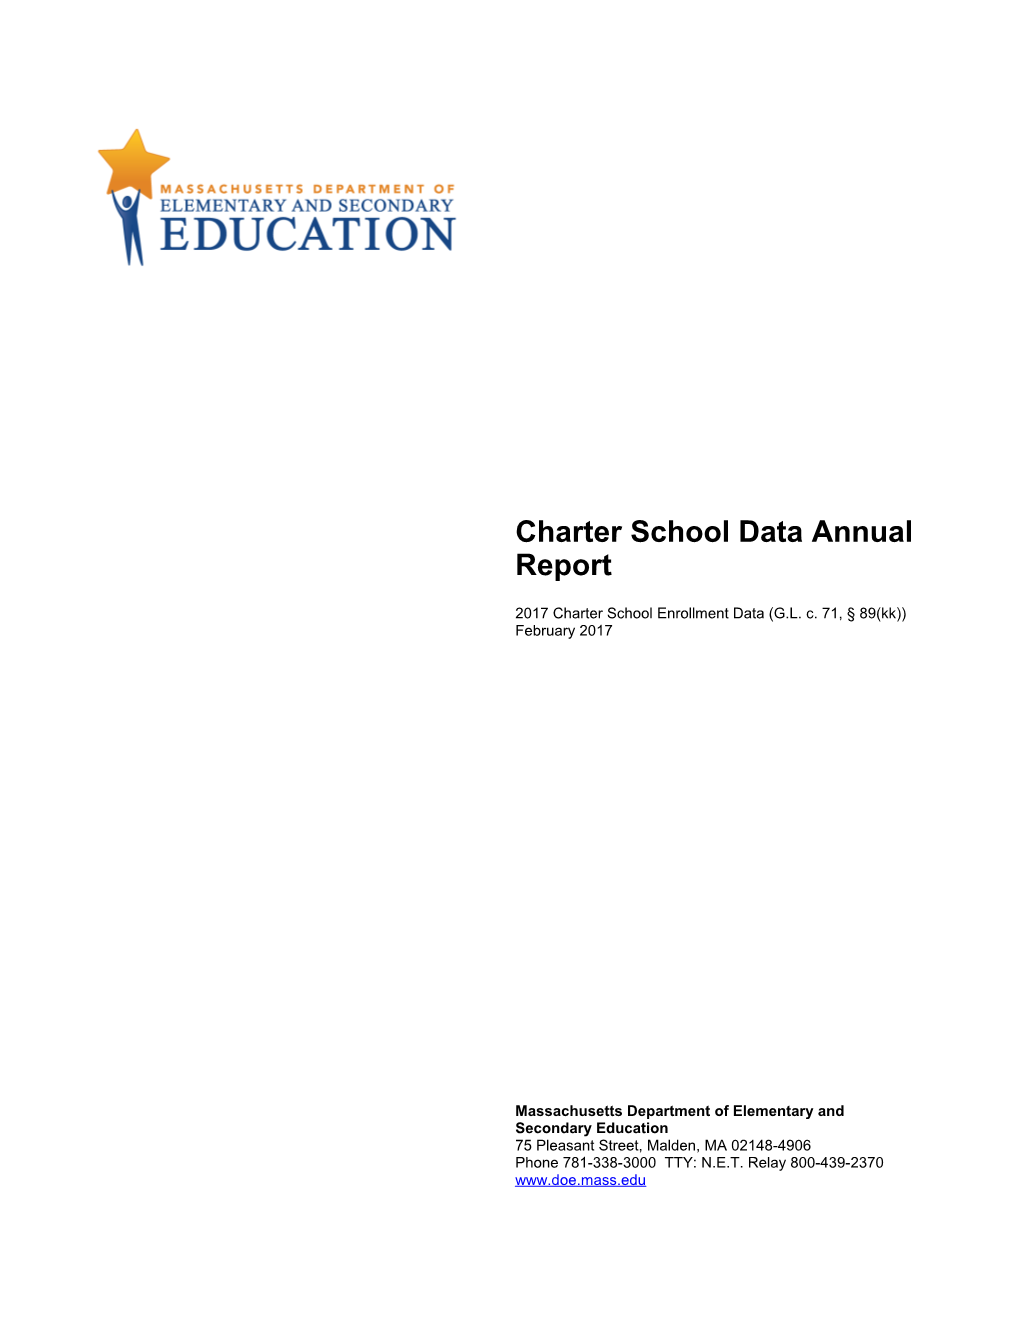 Charter School Data Annual Report Feb 2017